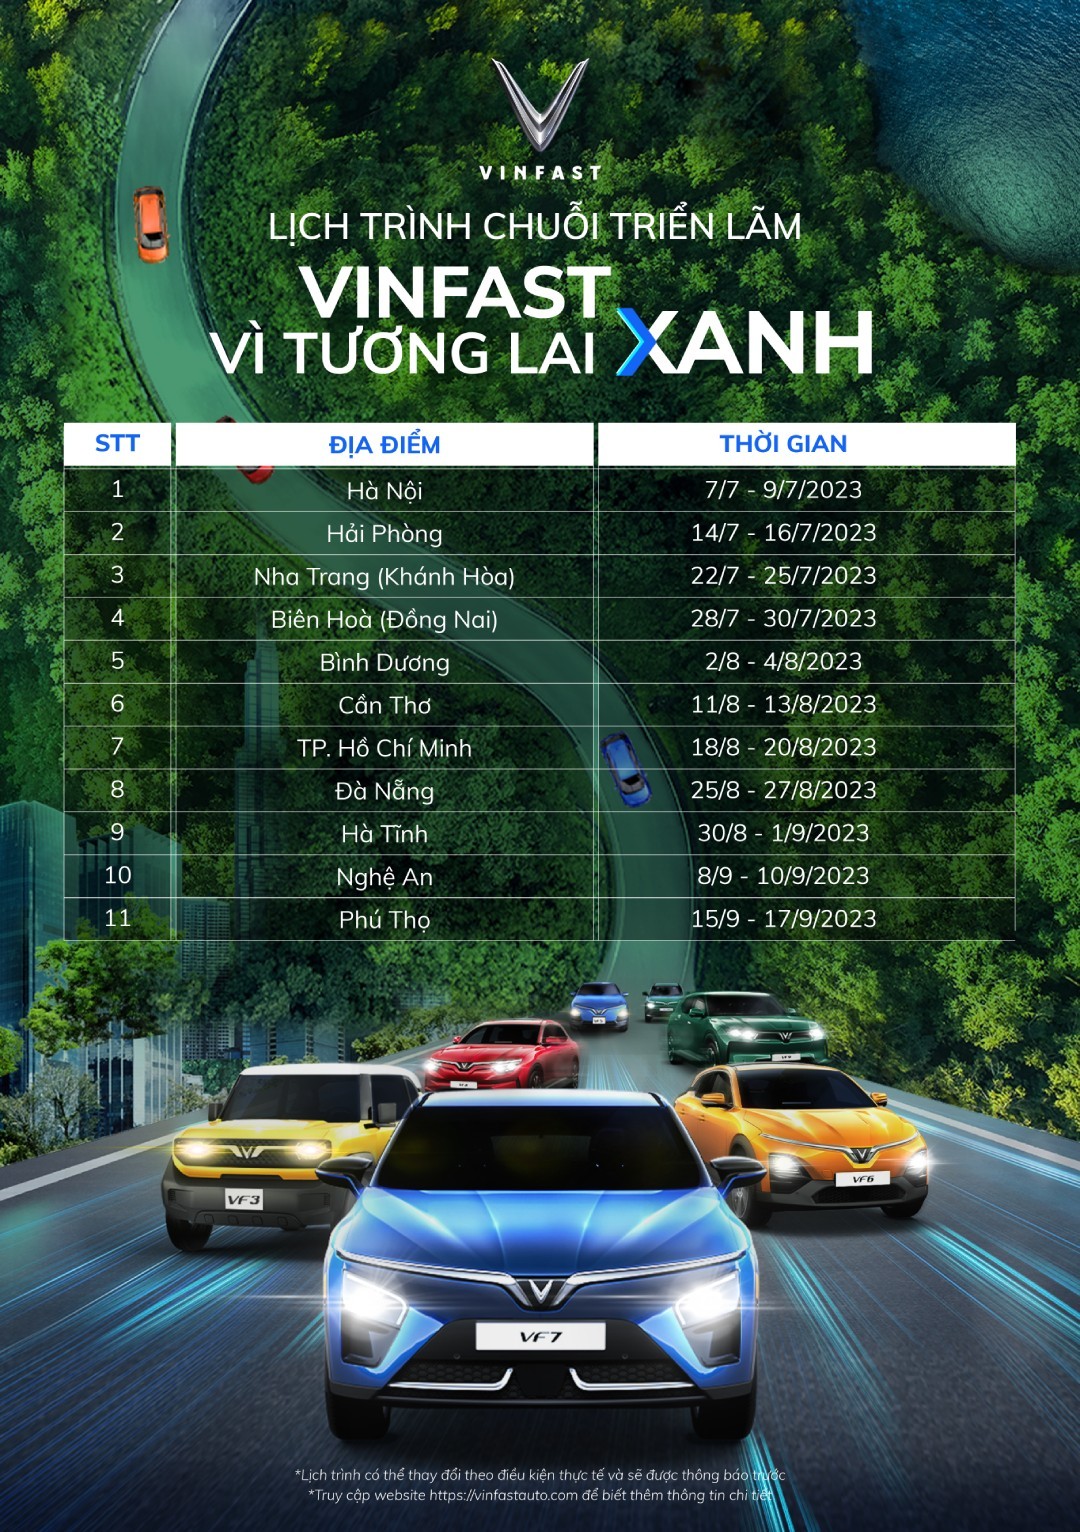 Triển lãm ‘VinFast - Vì tương lai xanh’ tại Hà Nội: Ra mắt bộ tứ xe điện VinFast mới ảnh 3